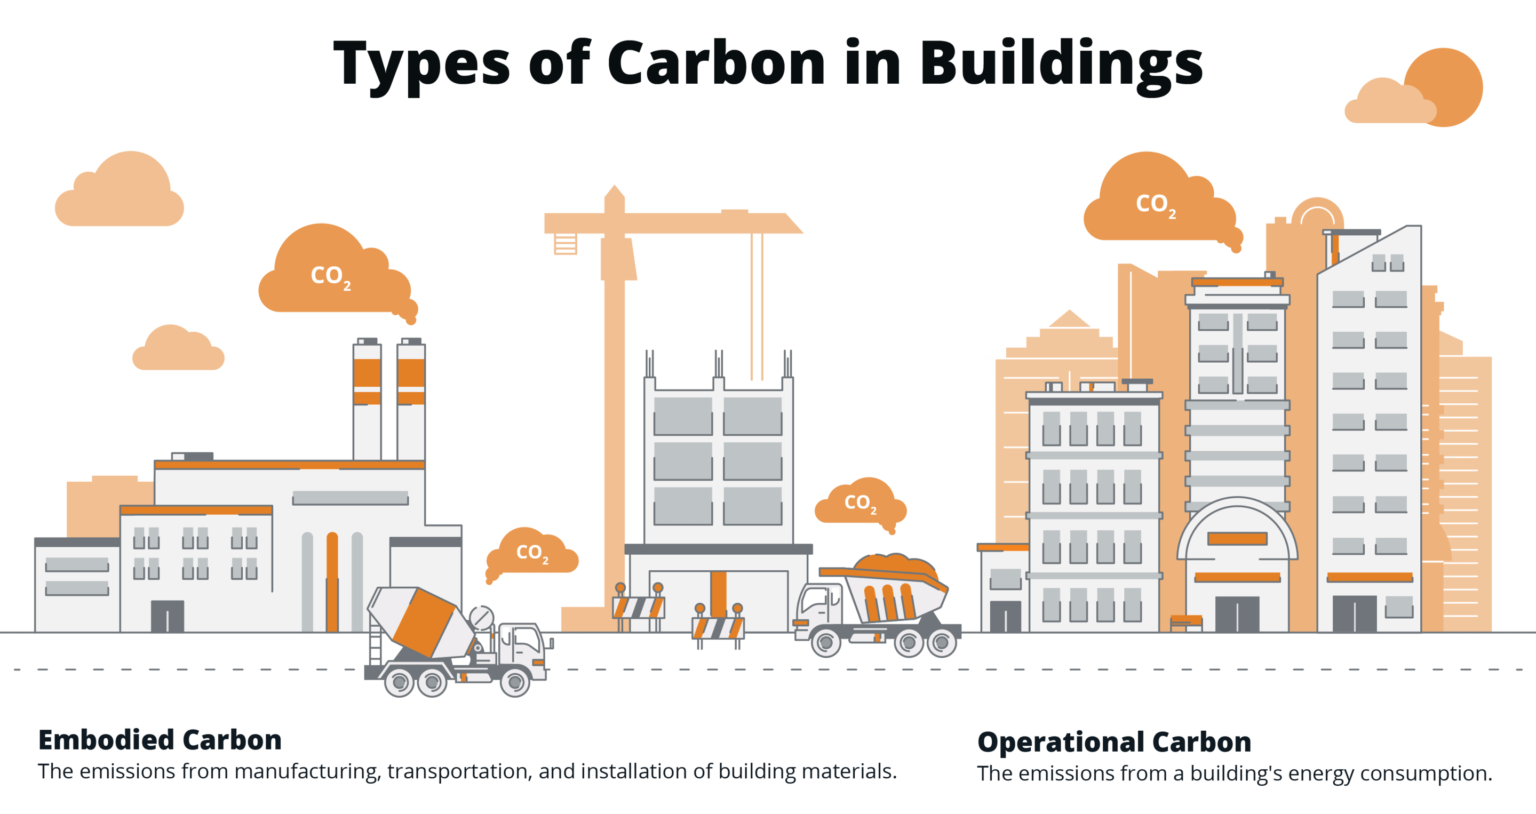 carbon footprint building materials